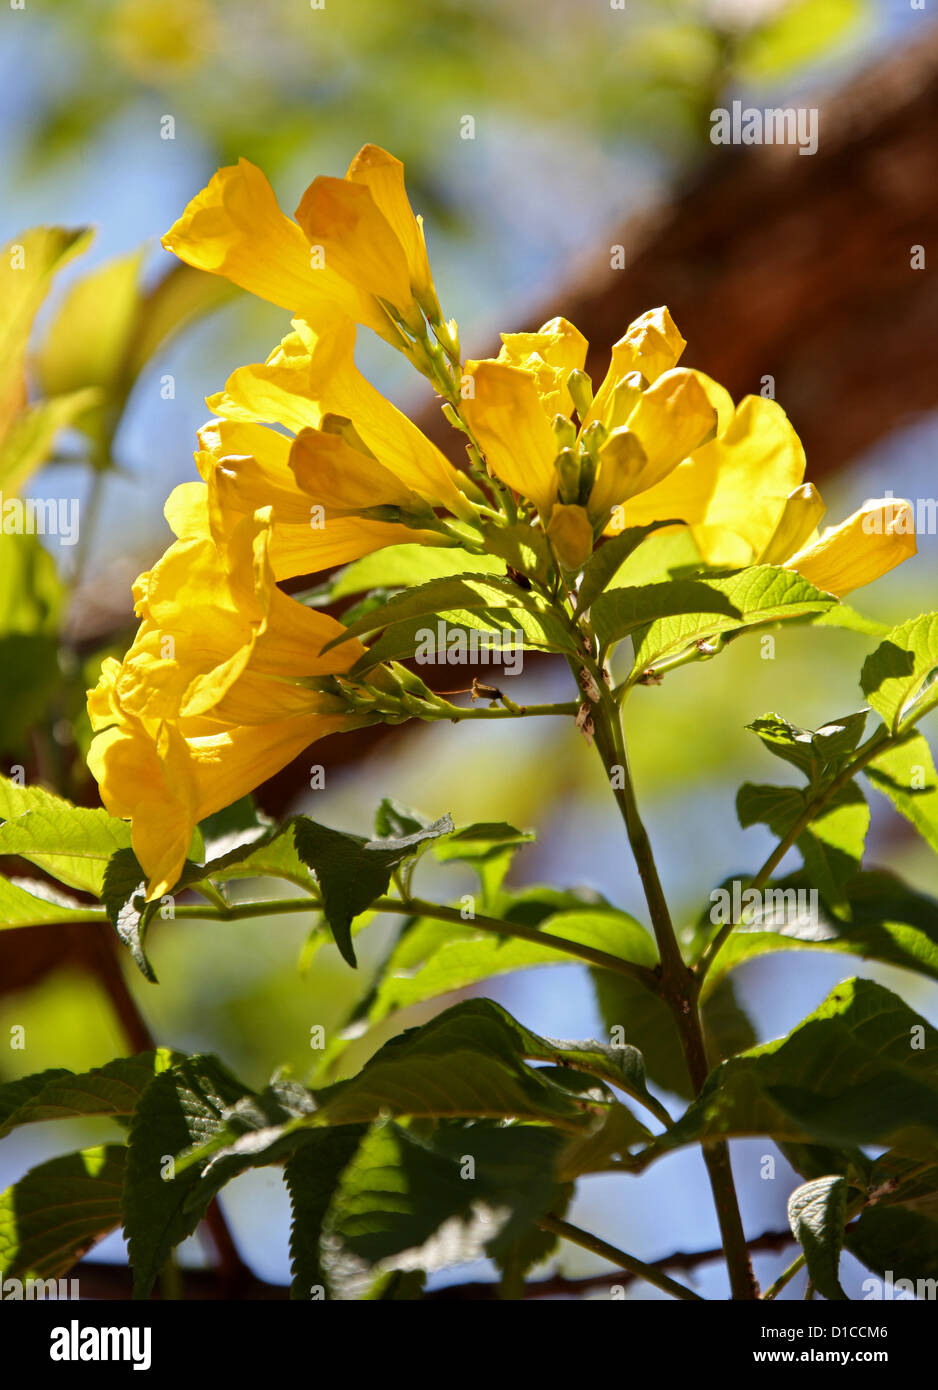 Aîné jaune Arbre, Tecoma stans, Bignoniaceae. Originaire de l'Amérique tropicale. Ce spécimen photographié à Madagascar, Afrique Banque D'Images